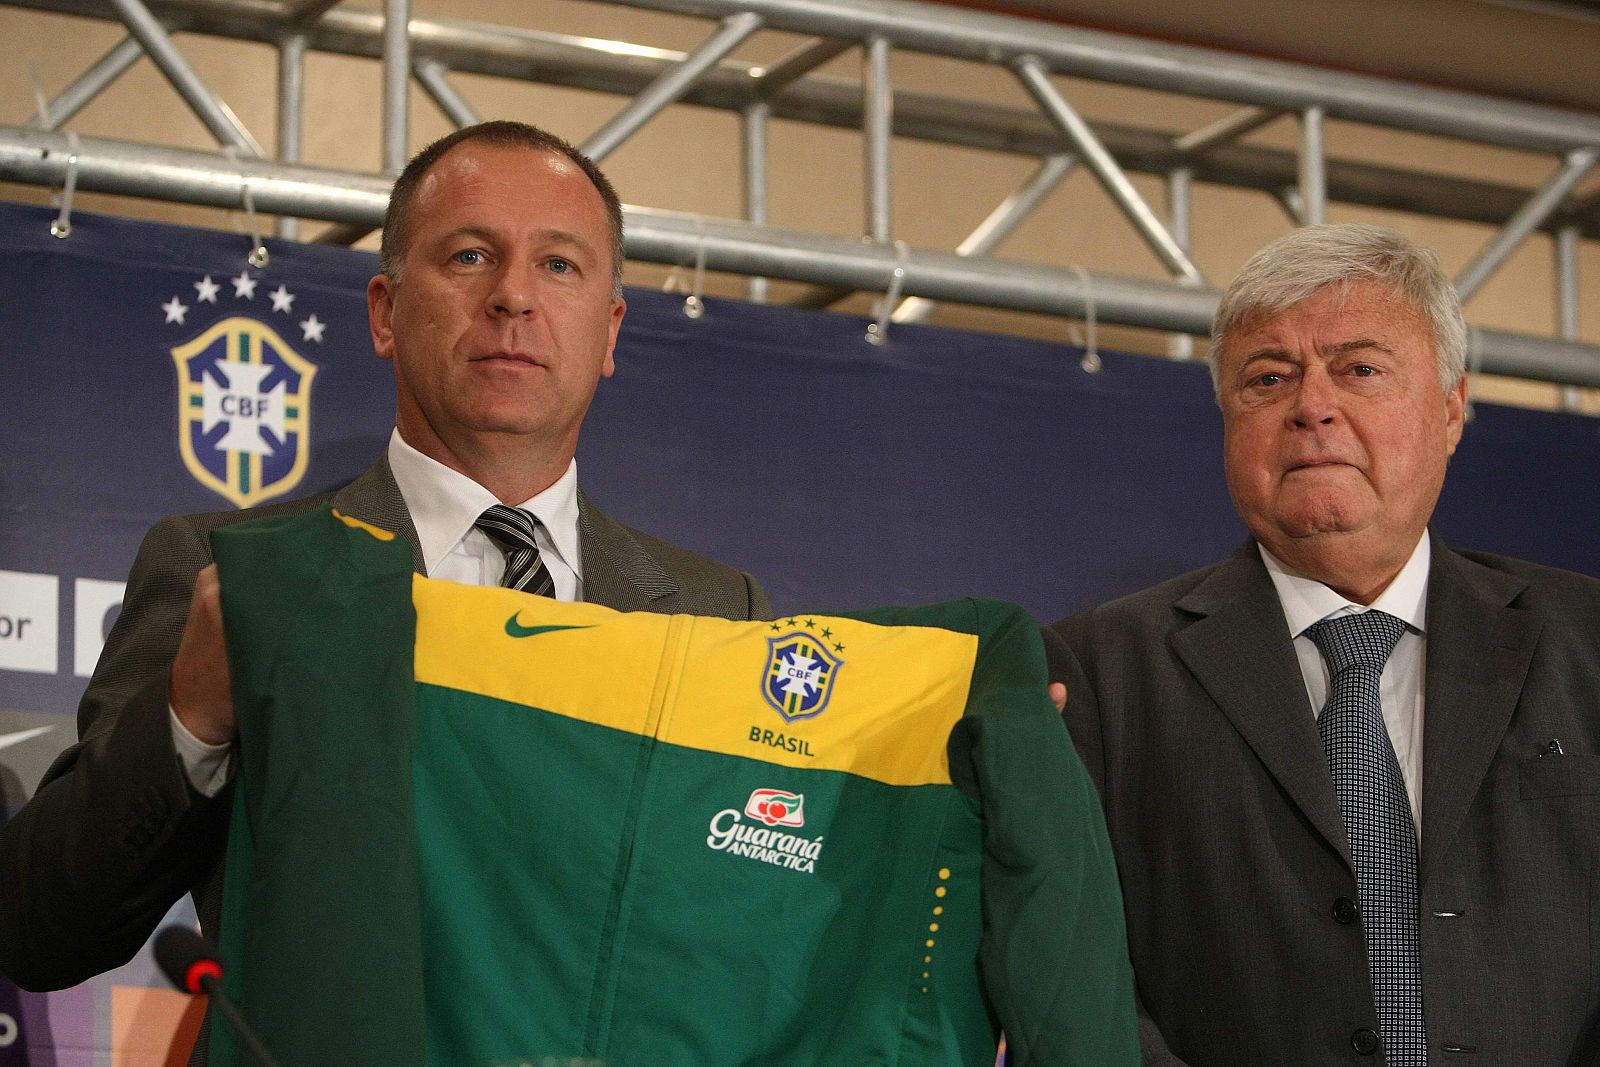 El nuevo director técnico de la selección brasileña de fútbol, Mano Menezes, muestra una prenda del equipo entregada por el presidente de la CBF, Ricardo Teixeira.